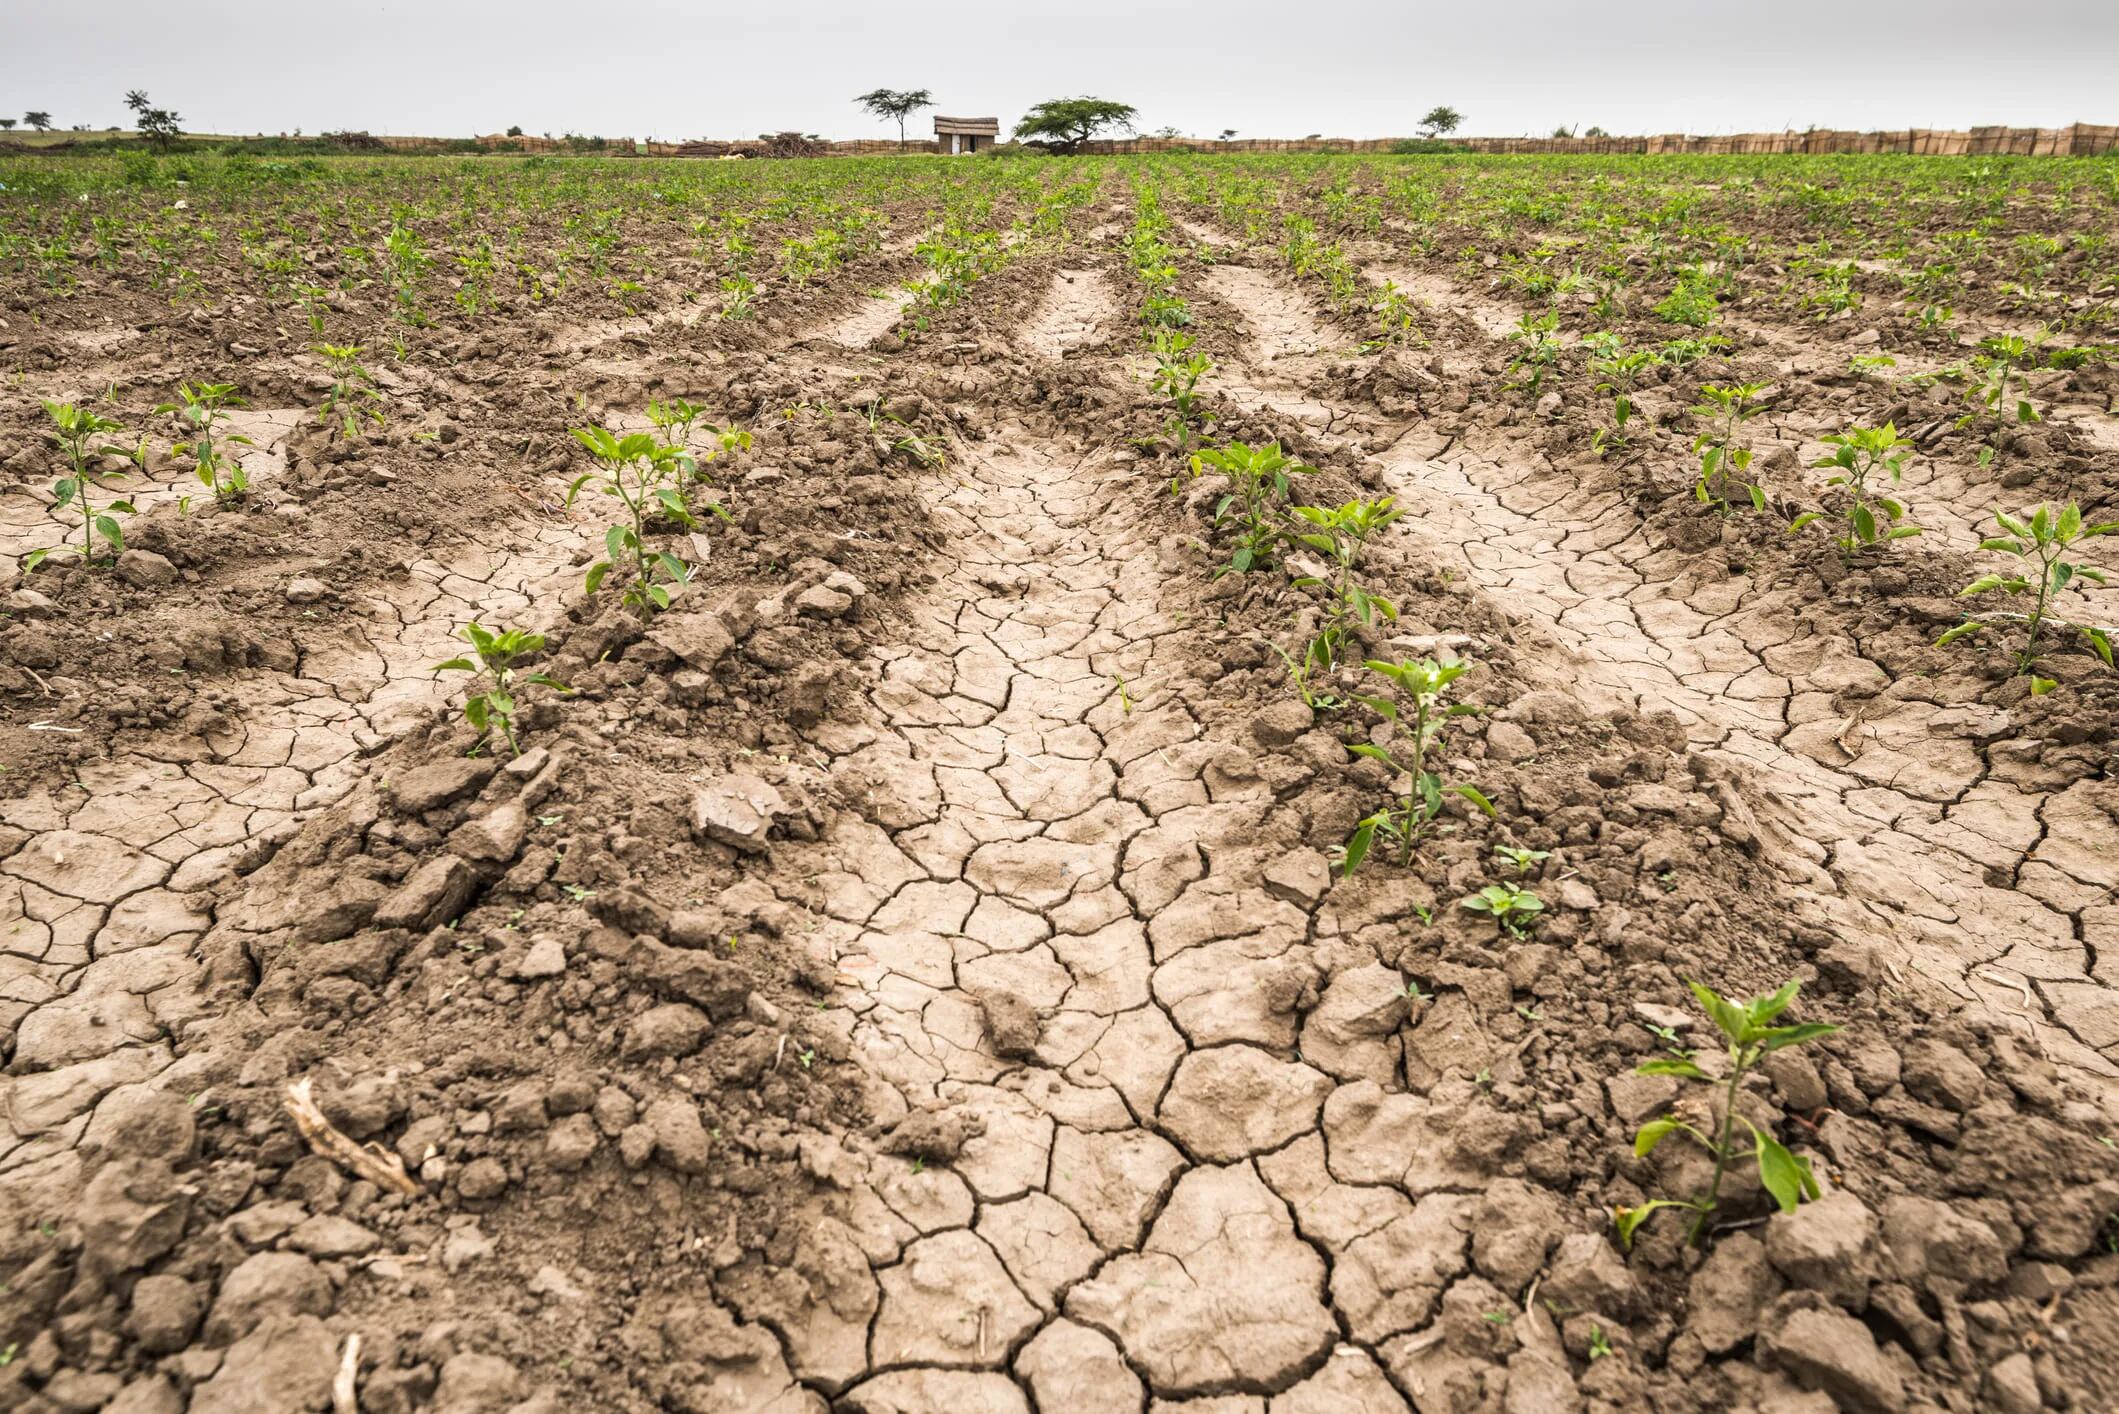 Ganadería: Alertan por la contaminación en plantas a raíz de la sequía